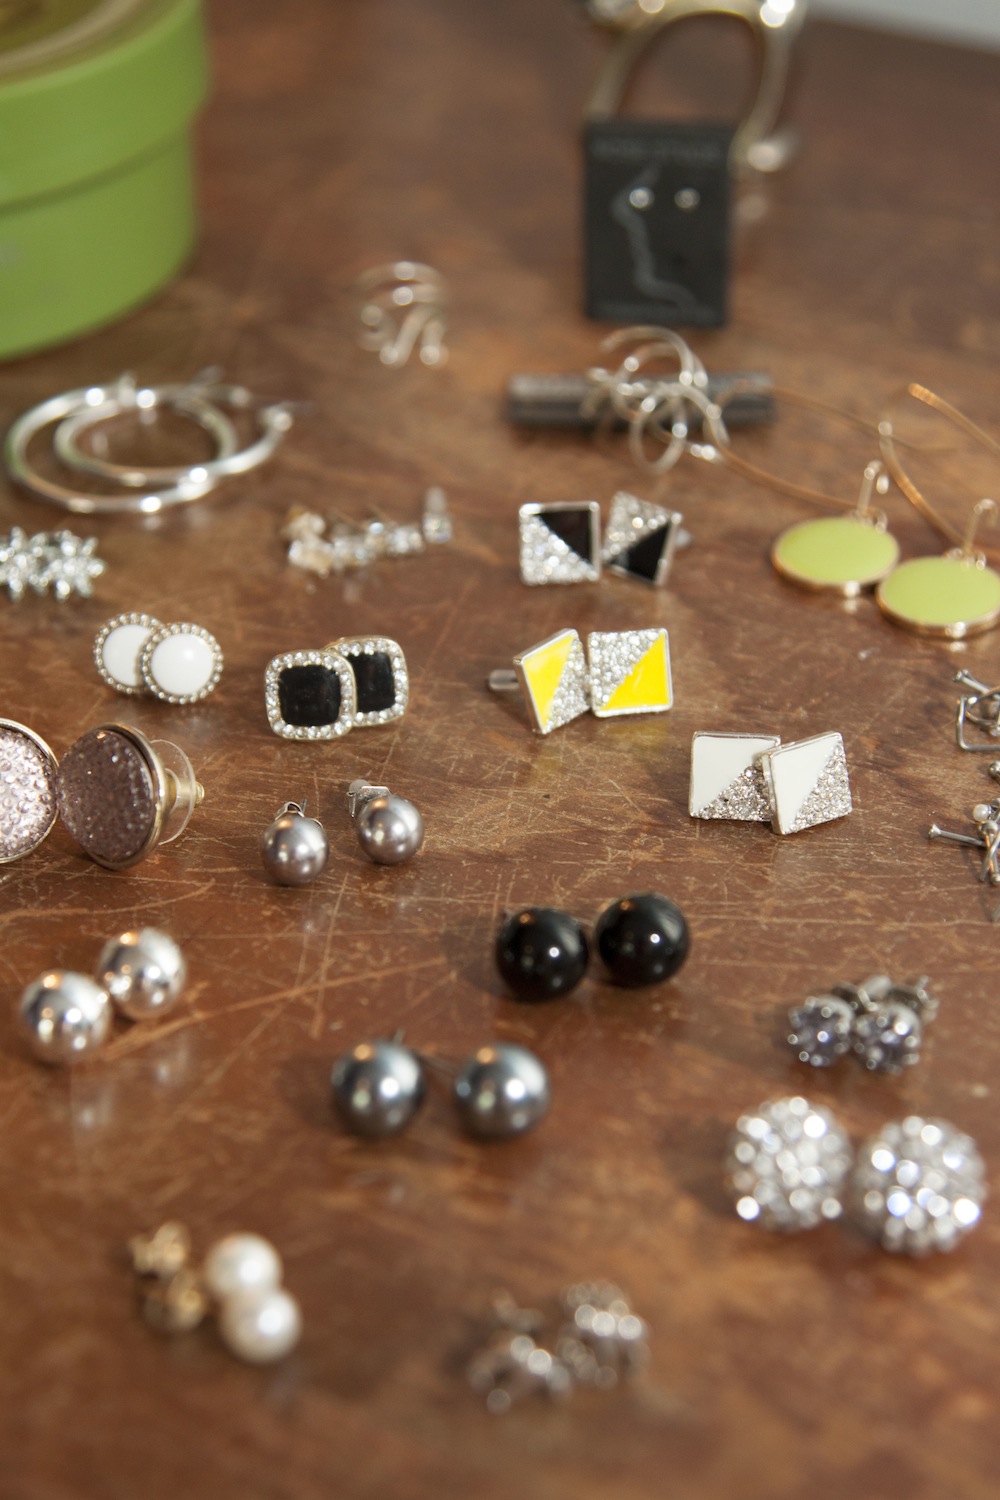 Organizing Jewelry: Earrings (Pt. 2)